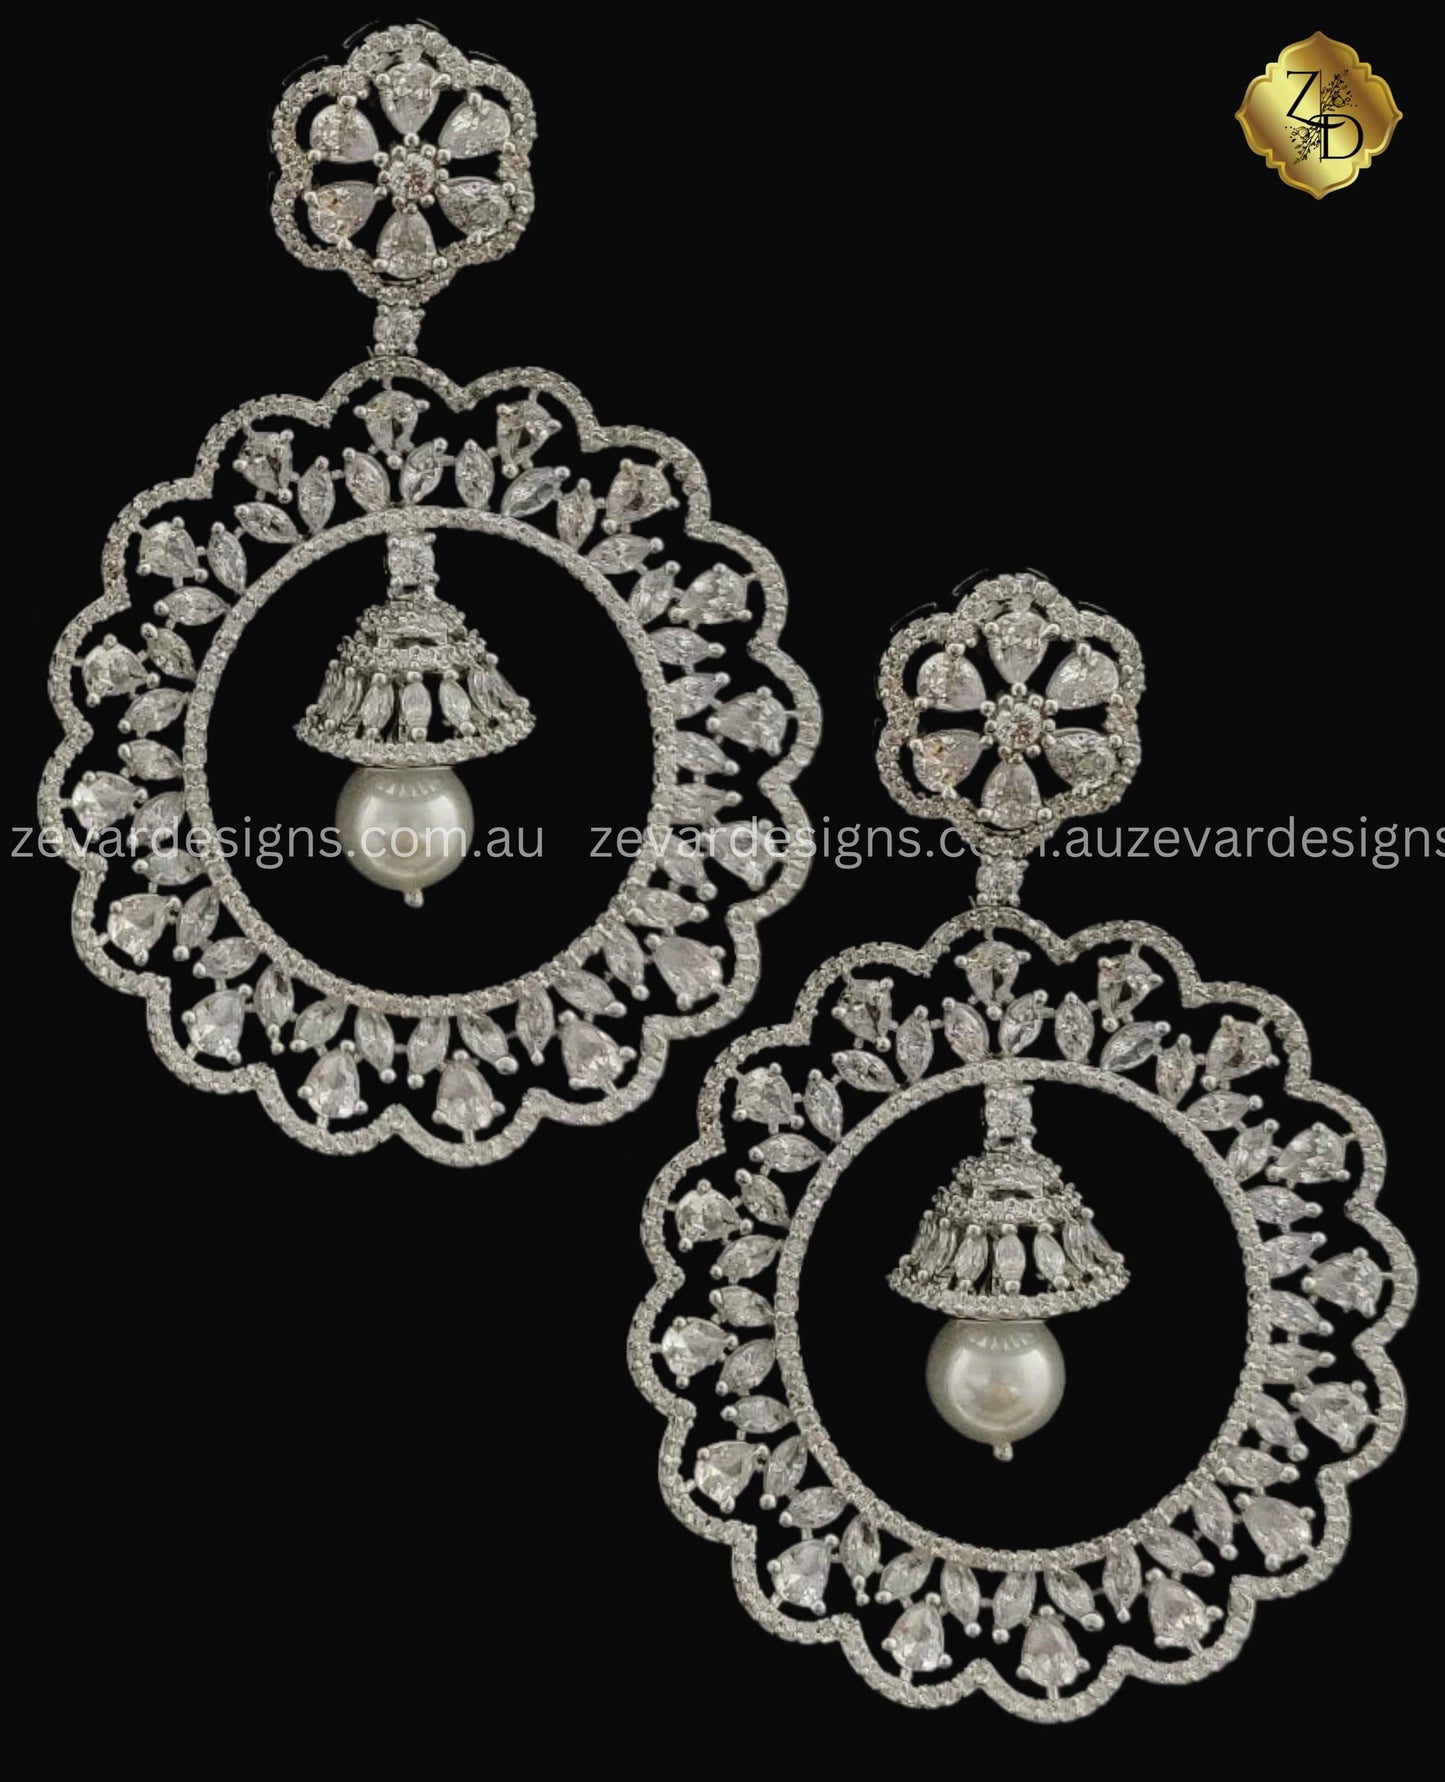 Zevar Designs Indo-Western Earrings AD/ZIRCONIA STUDDED PEARLS CHANDBALI EARRINGS